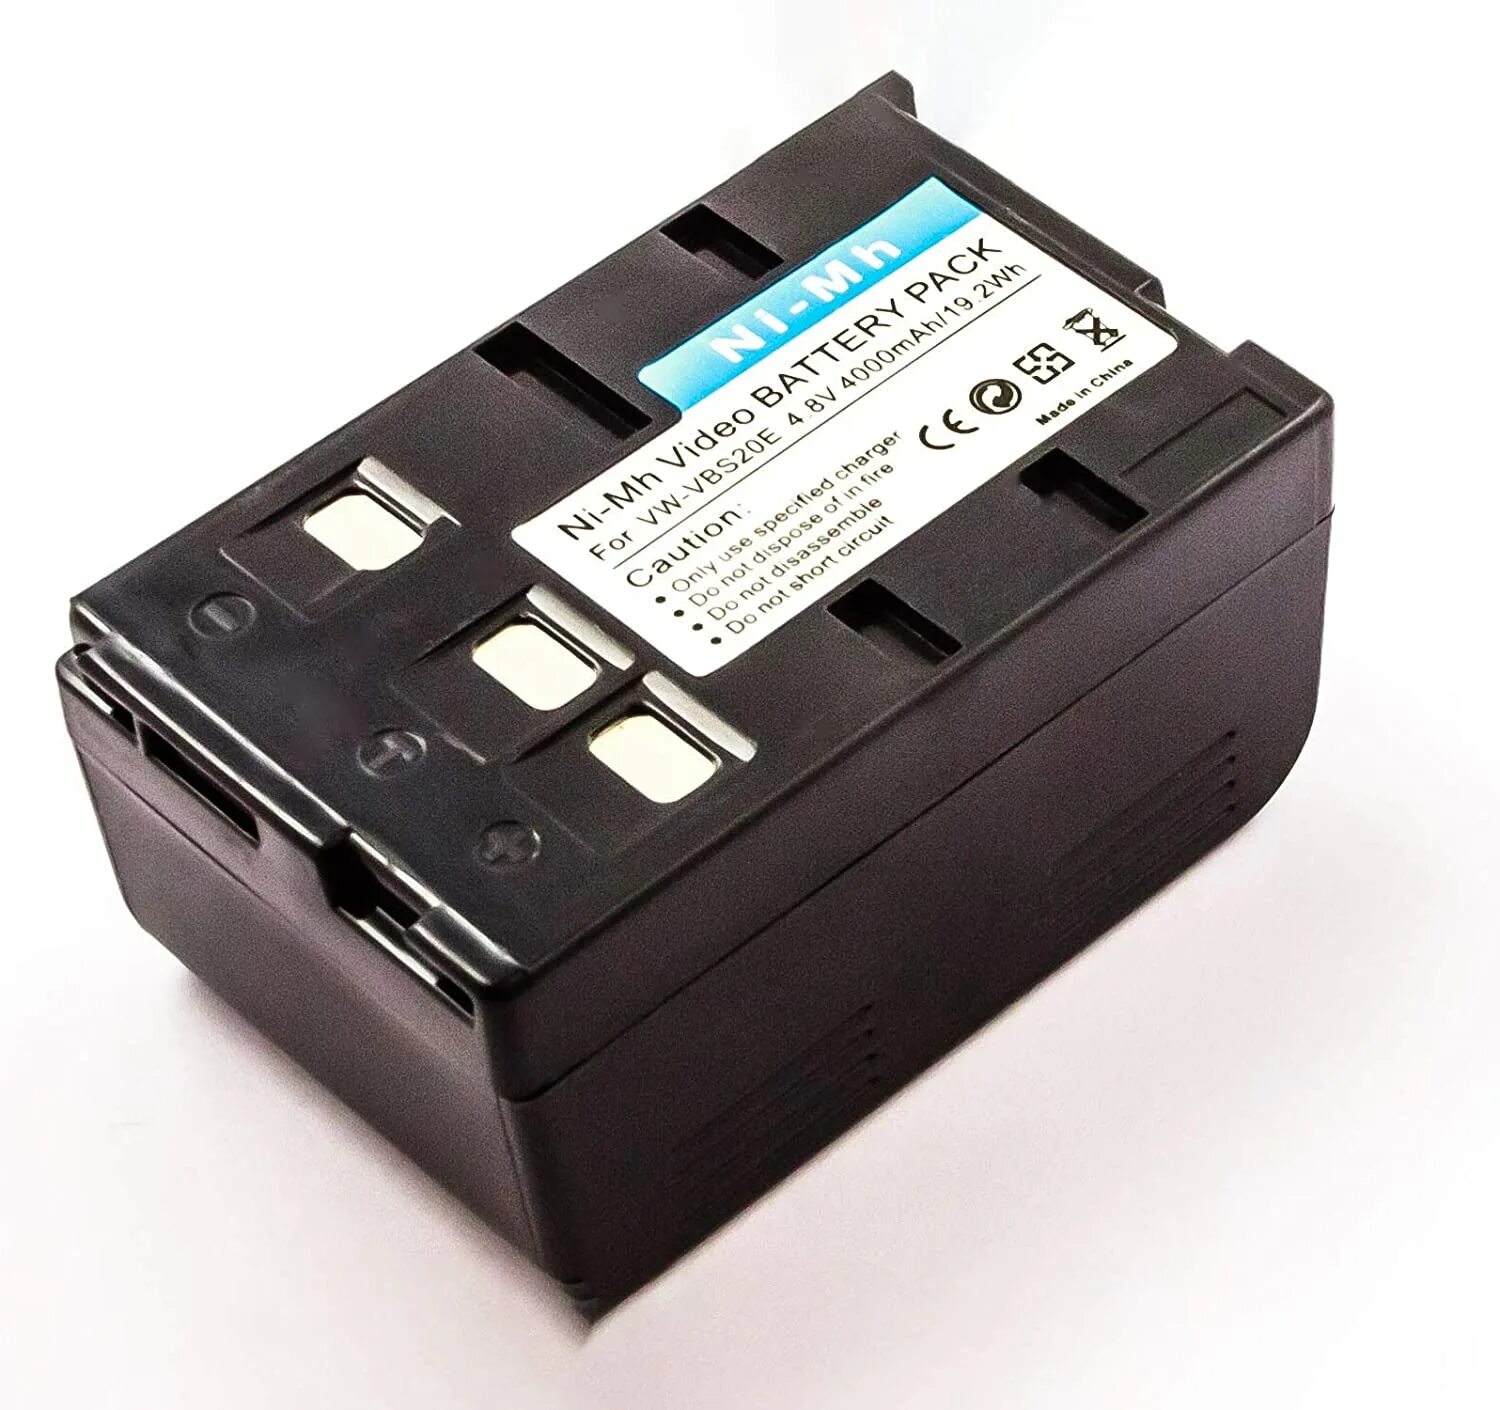 Купить аккумулятор для видеокамеры. Аккумулятор BP 74lh. GP Camcorder Battery. Блок аккумуляторный Drager t4 NIMH (83 18 704). Model 1231 spare Duracell dr11 Battery..